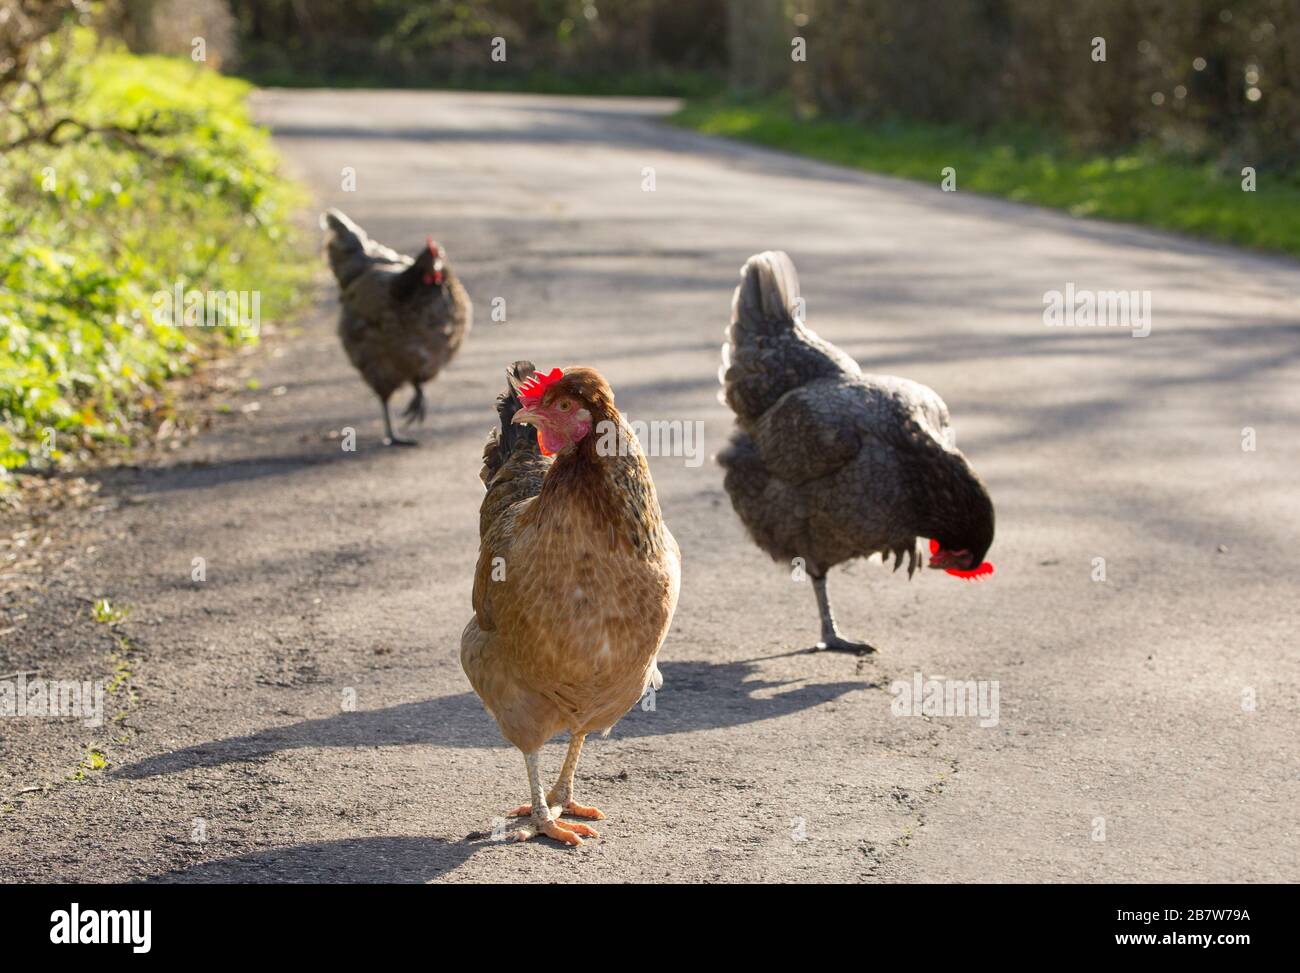 Poulets sur le côté d'une route de pays en mars 2020. North Dorset Angleterre Royaume-Uni GB. Les poules étaient en forte demande lors de l'éclosion de coronavirus. Banque D'Images